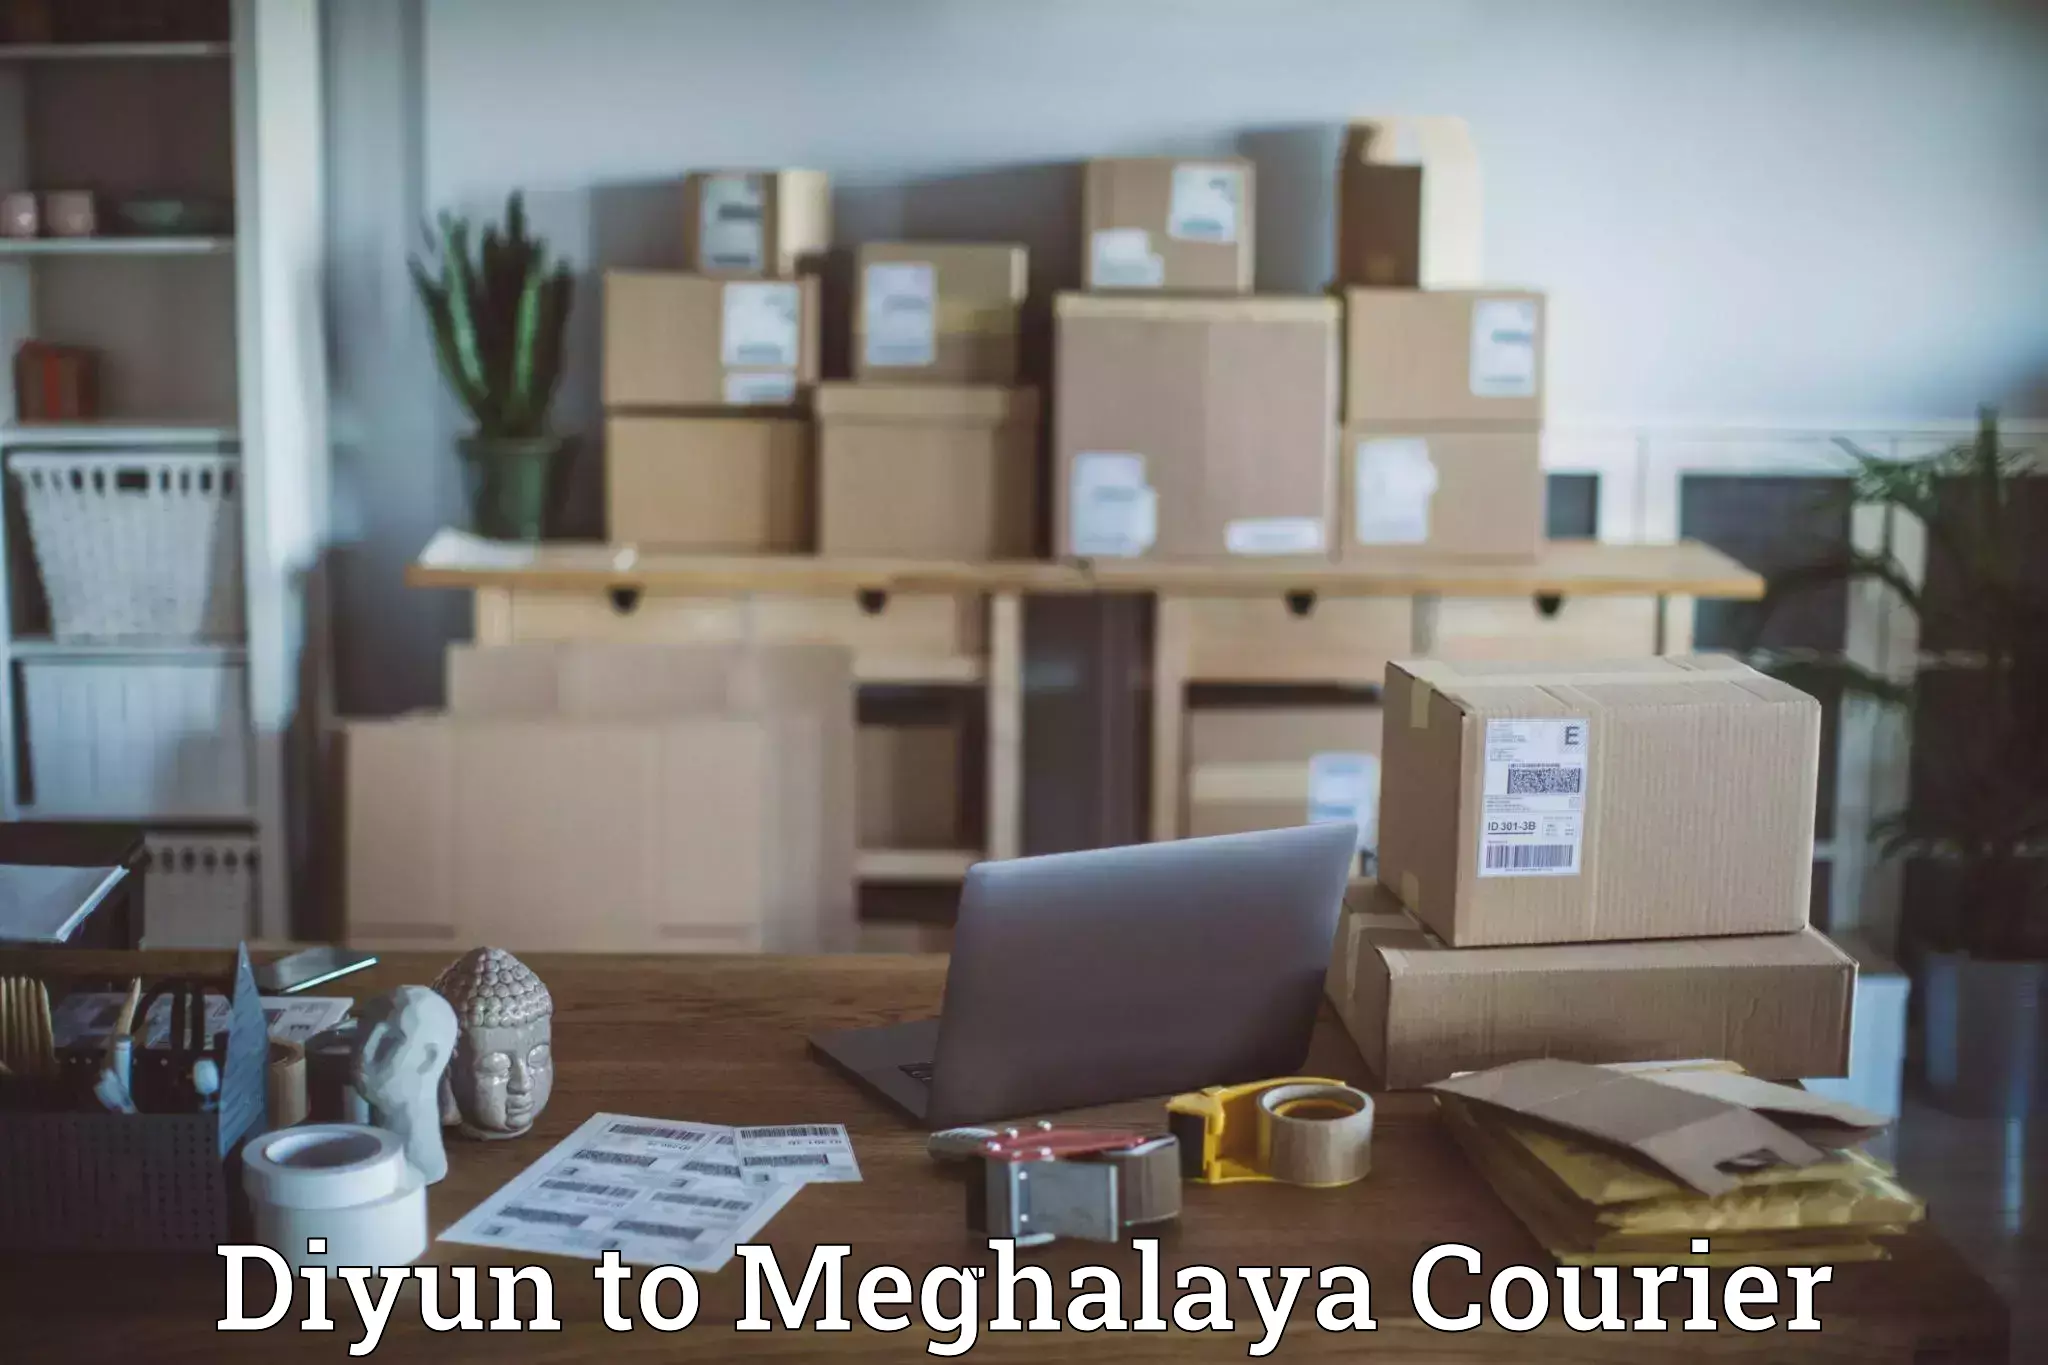 Premium courier services Diyun to Meghalaya